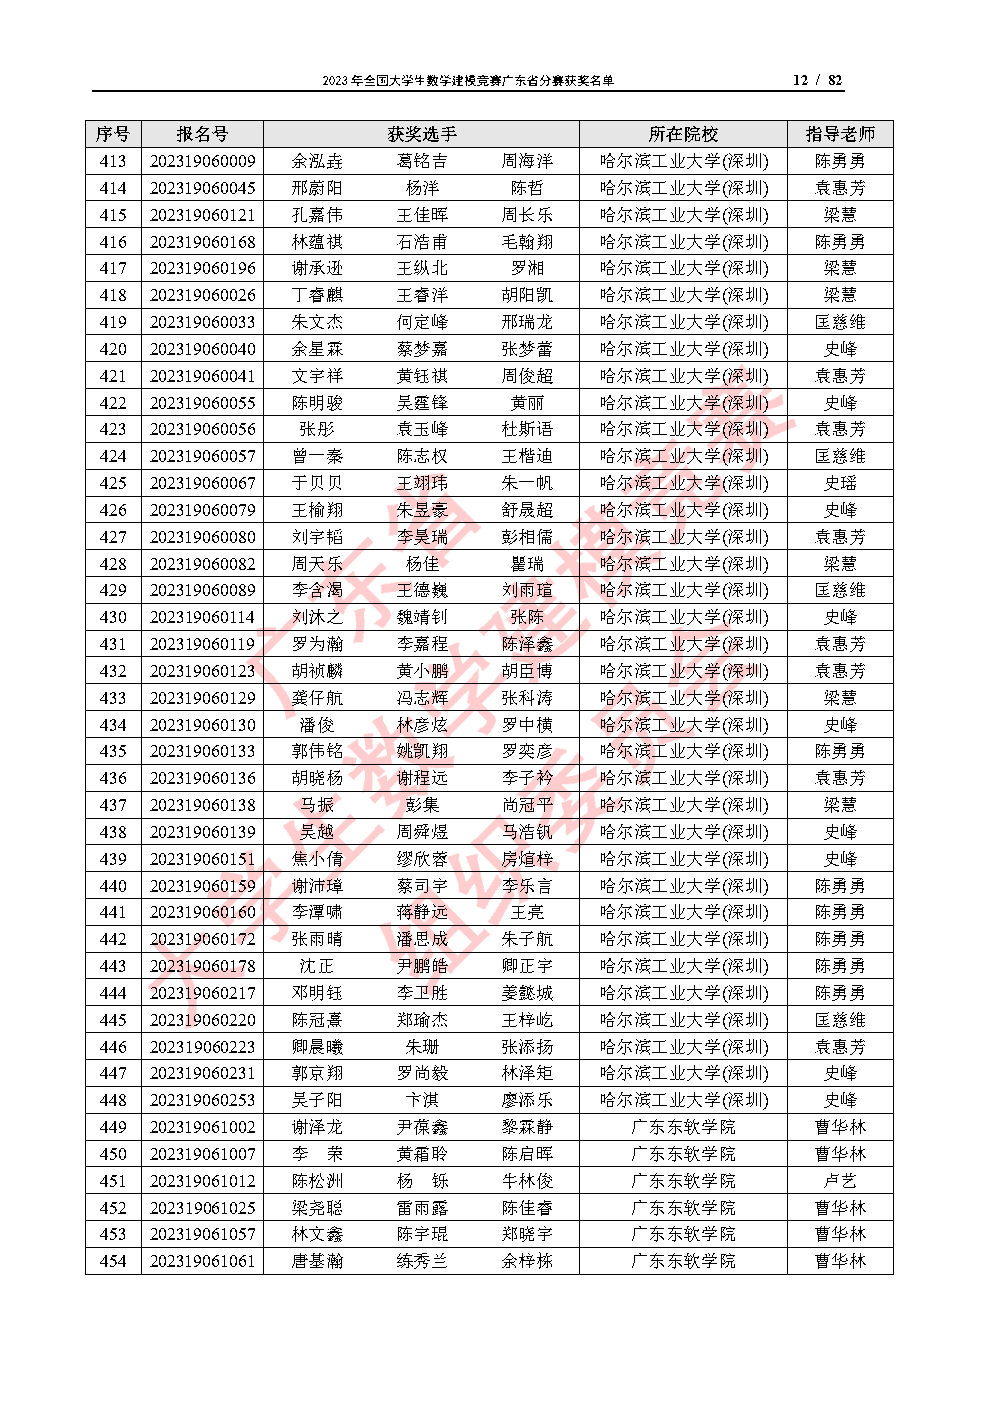 2023年全国大学生数学建模竞赛广东省分赛获奖名单_Page12.jpg